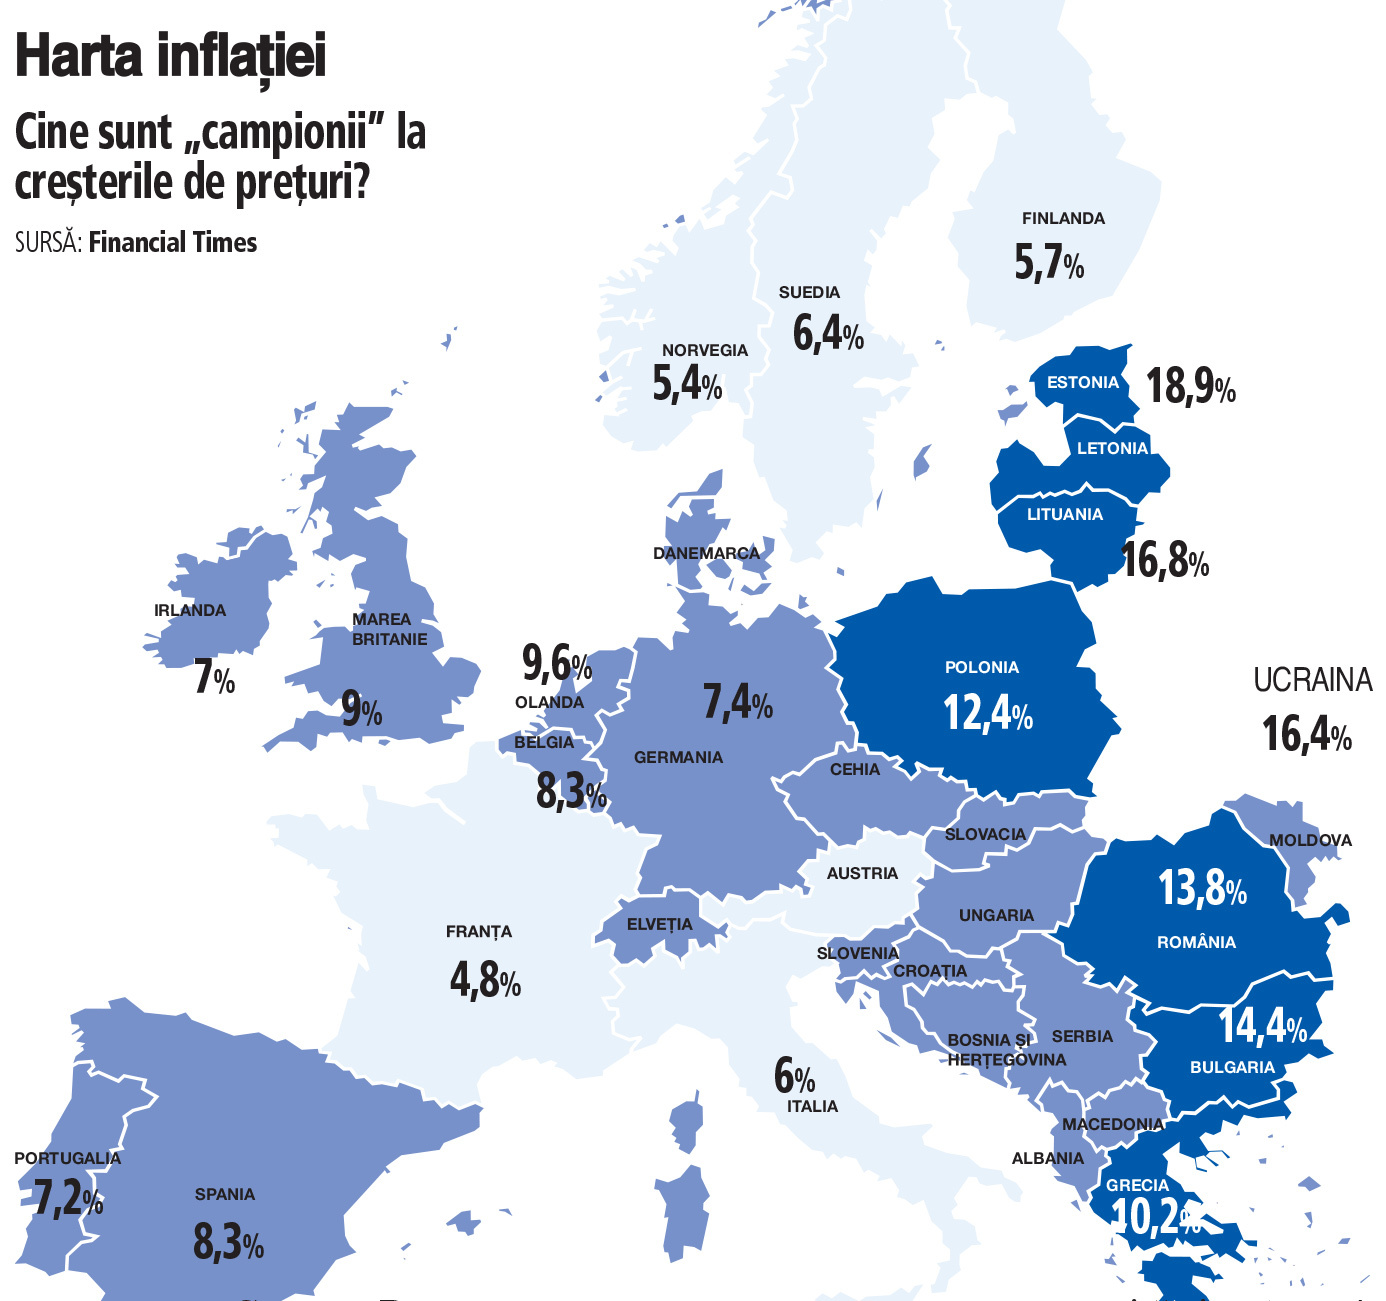 Harta inflaţiei în Europa: Inflaţia îi loveşte pe europeni în mod disproporţionat: Europa de Est şi ţările baltice, cele mai afectate